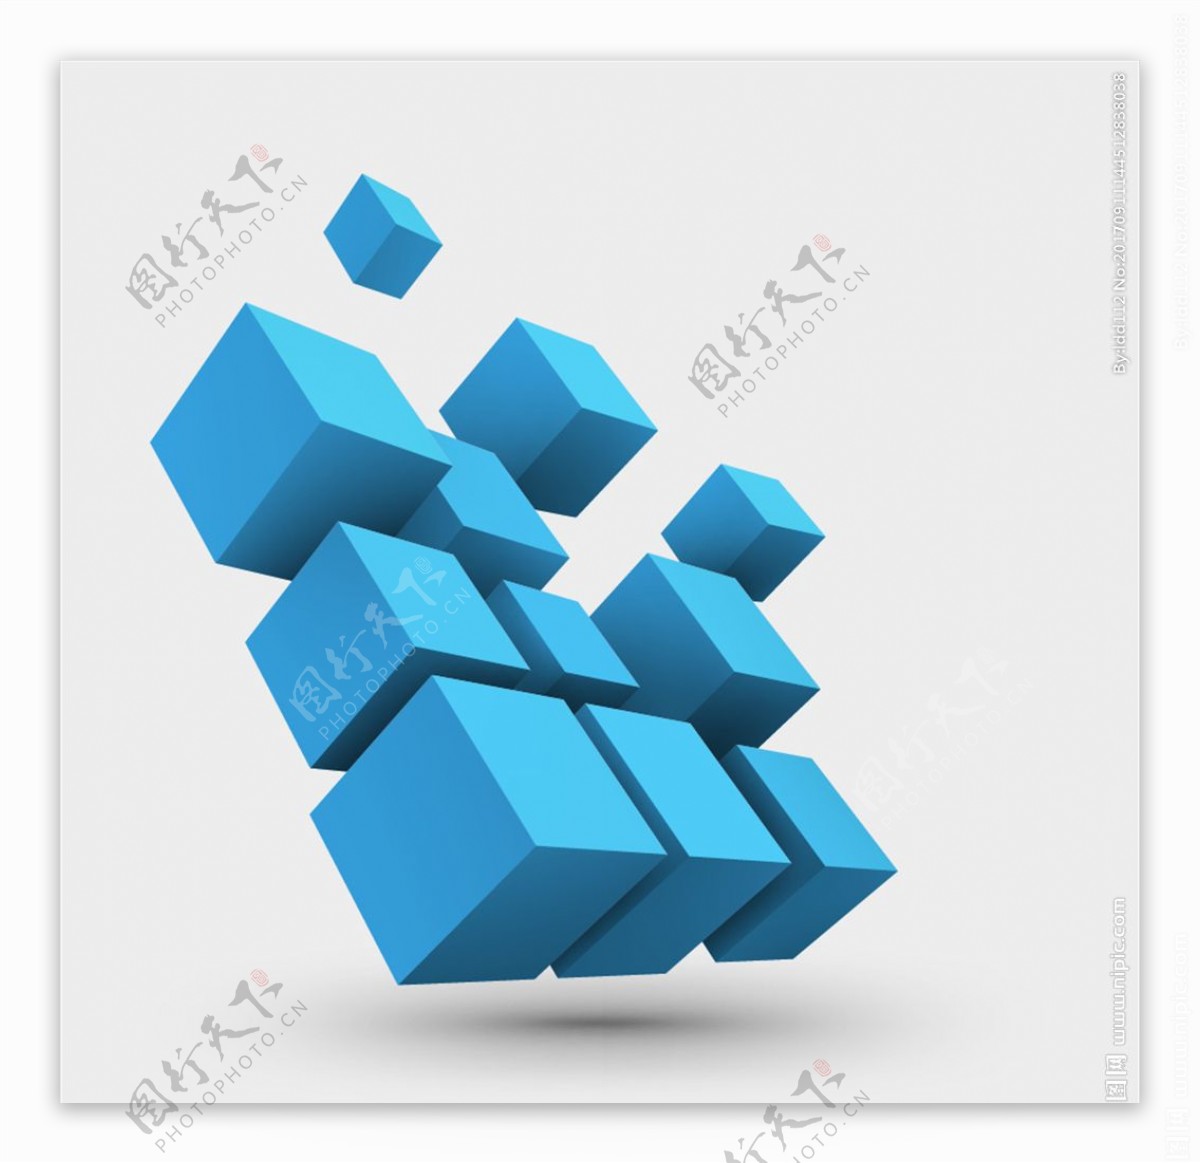 蓝色3d立方体几何图形矢量素材